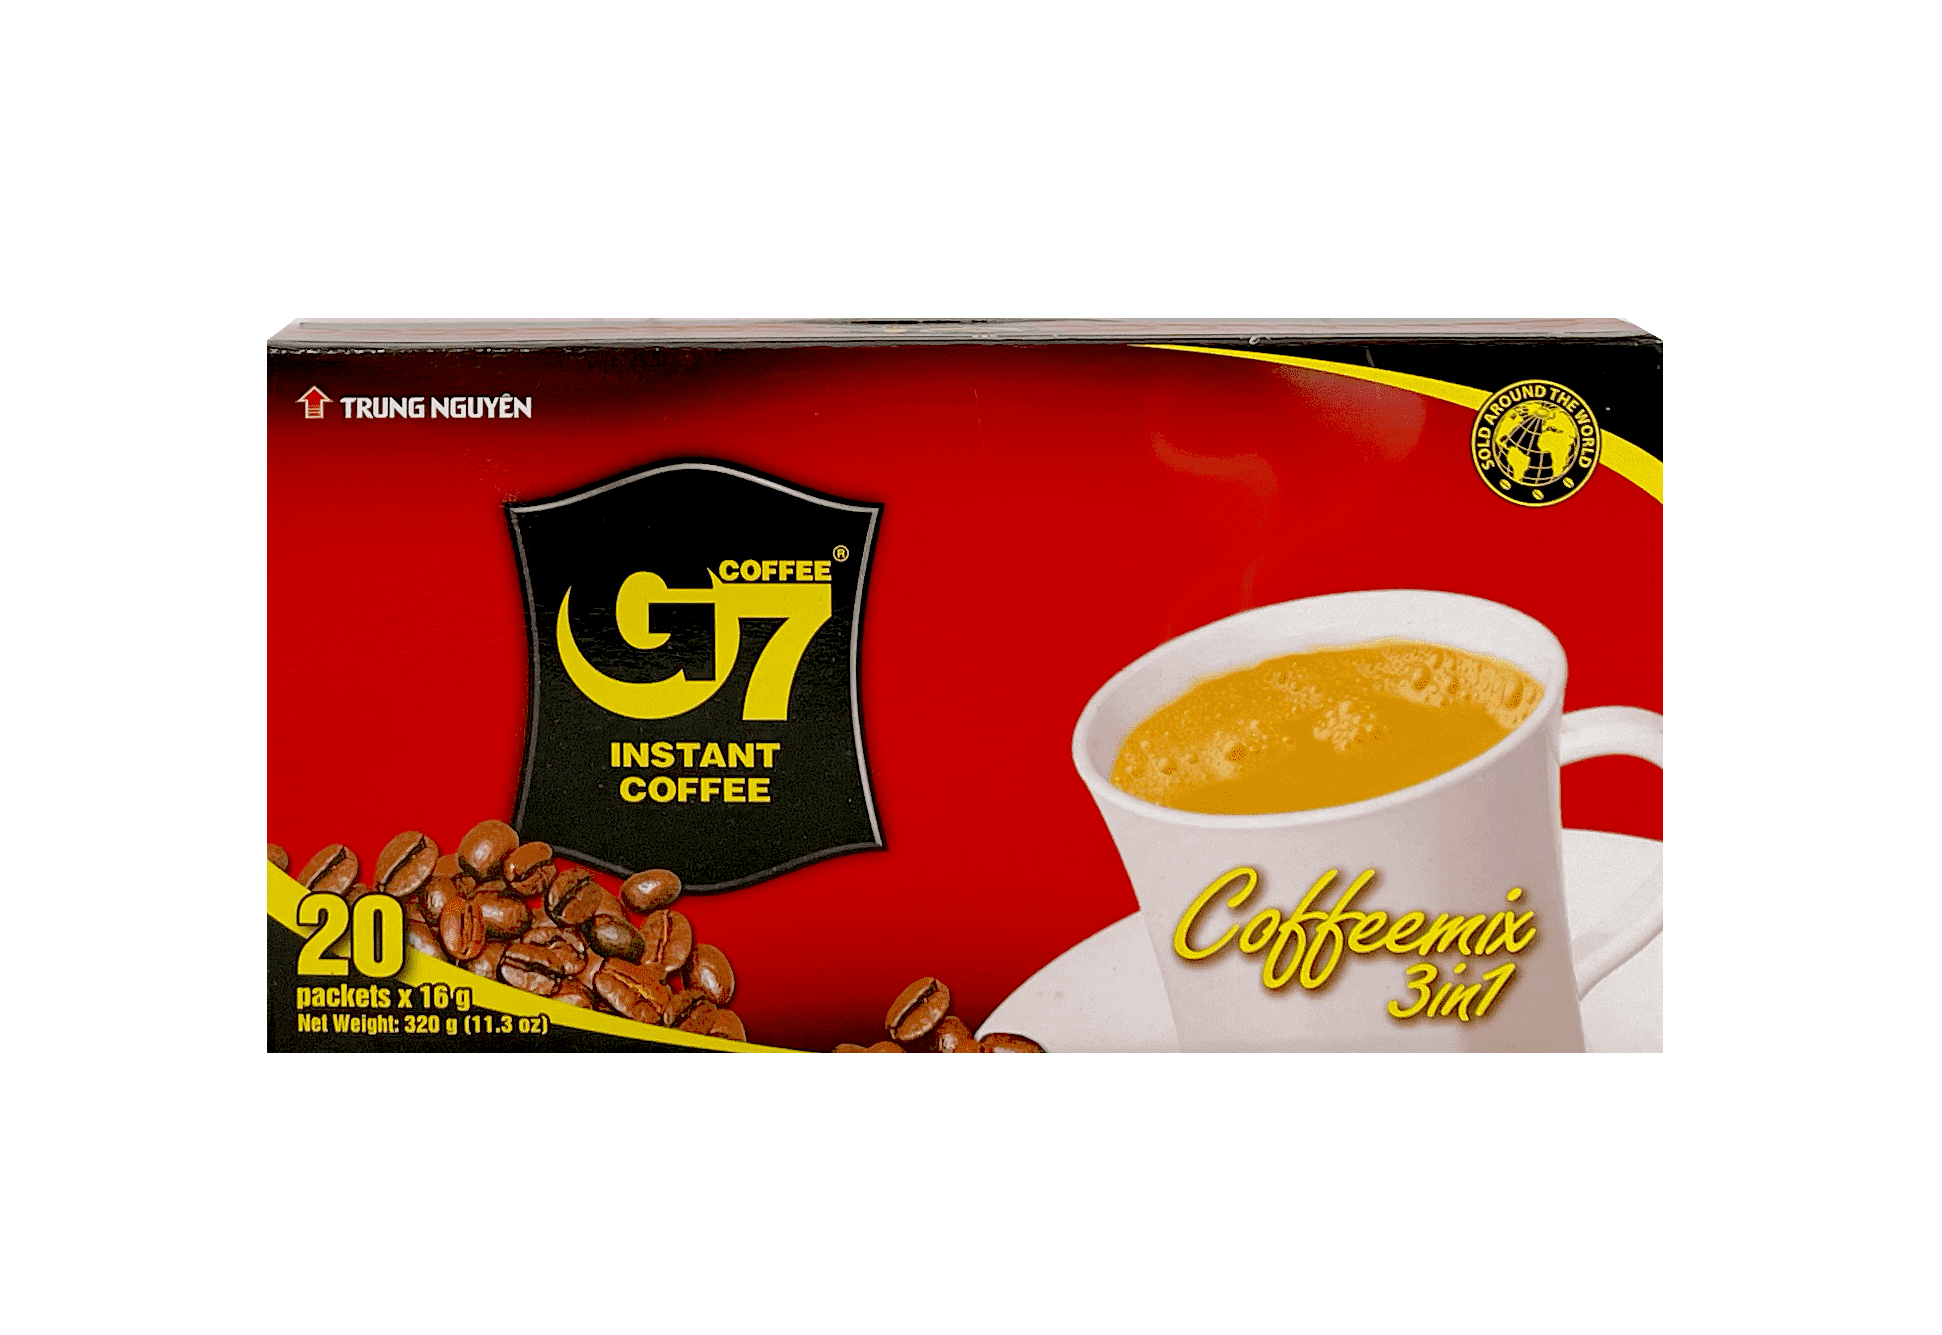 Snabb Kaffe G7 3in1 320g/Ask Trung Nguyen Vietnam